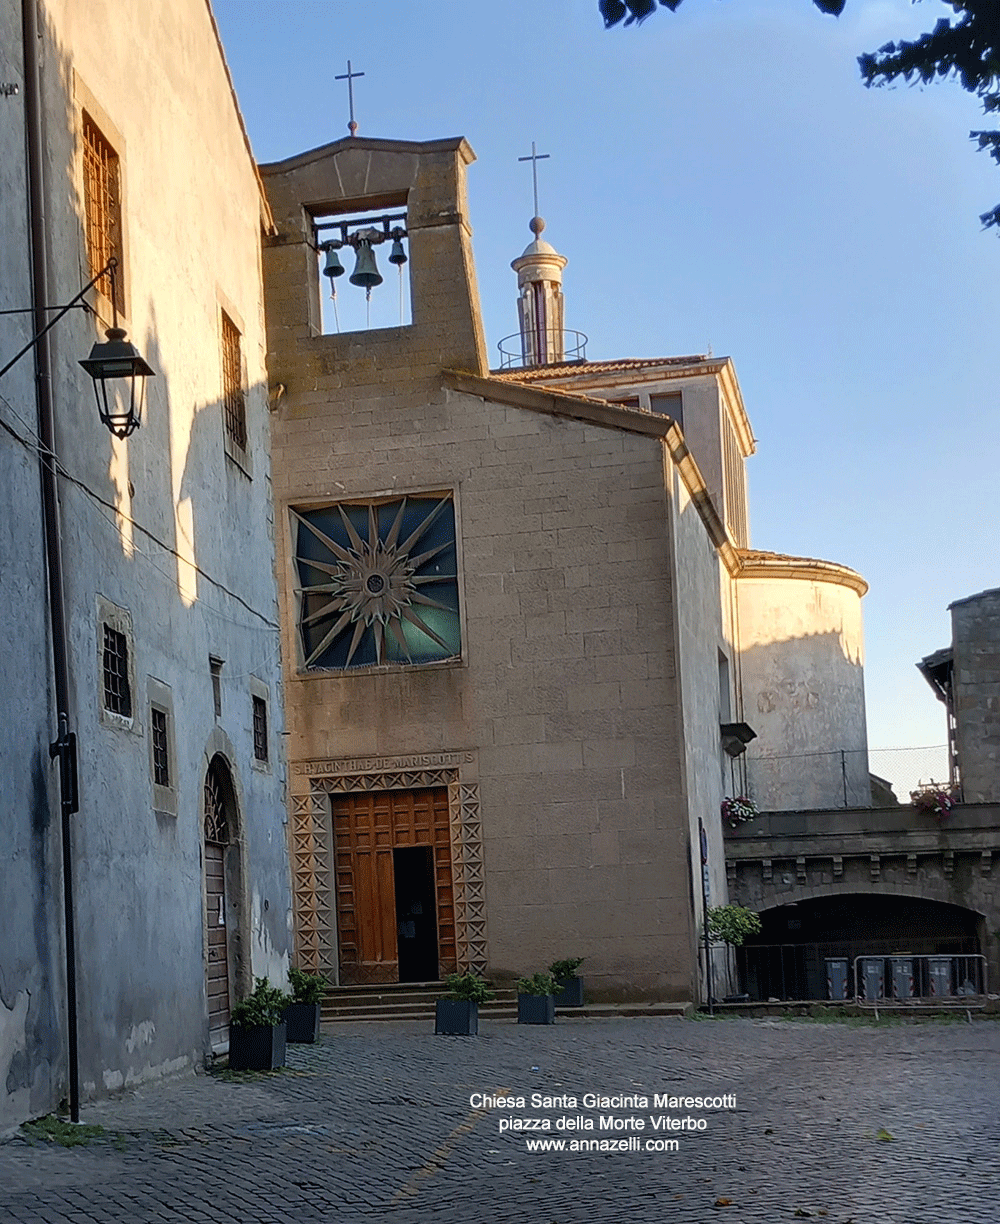 chiesa santa giacinta marescotti piazza della morte viterbo info foto anna zelli